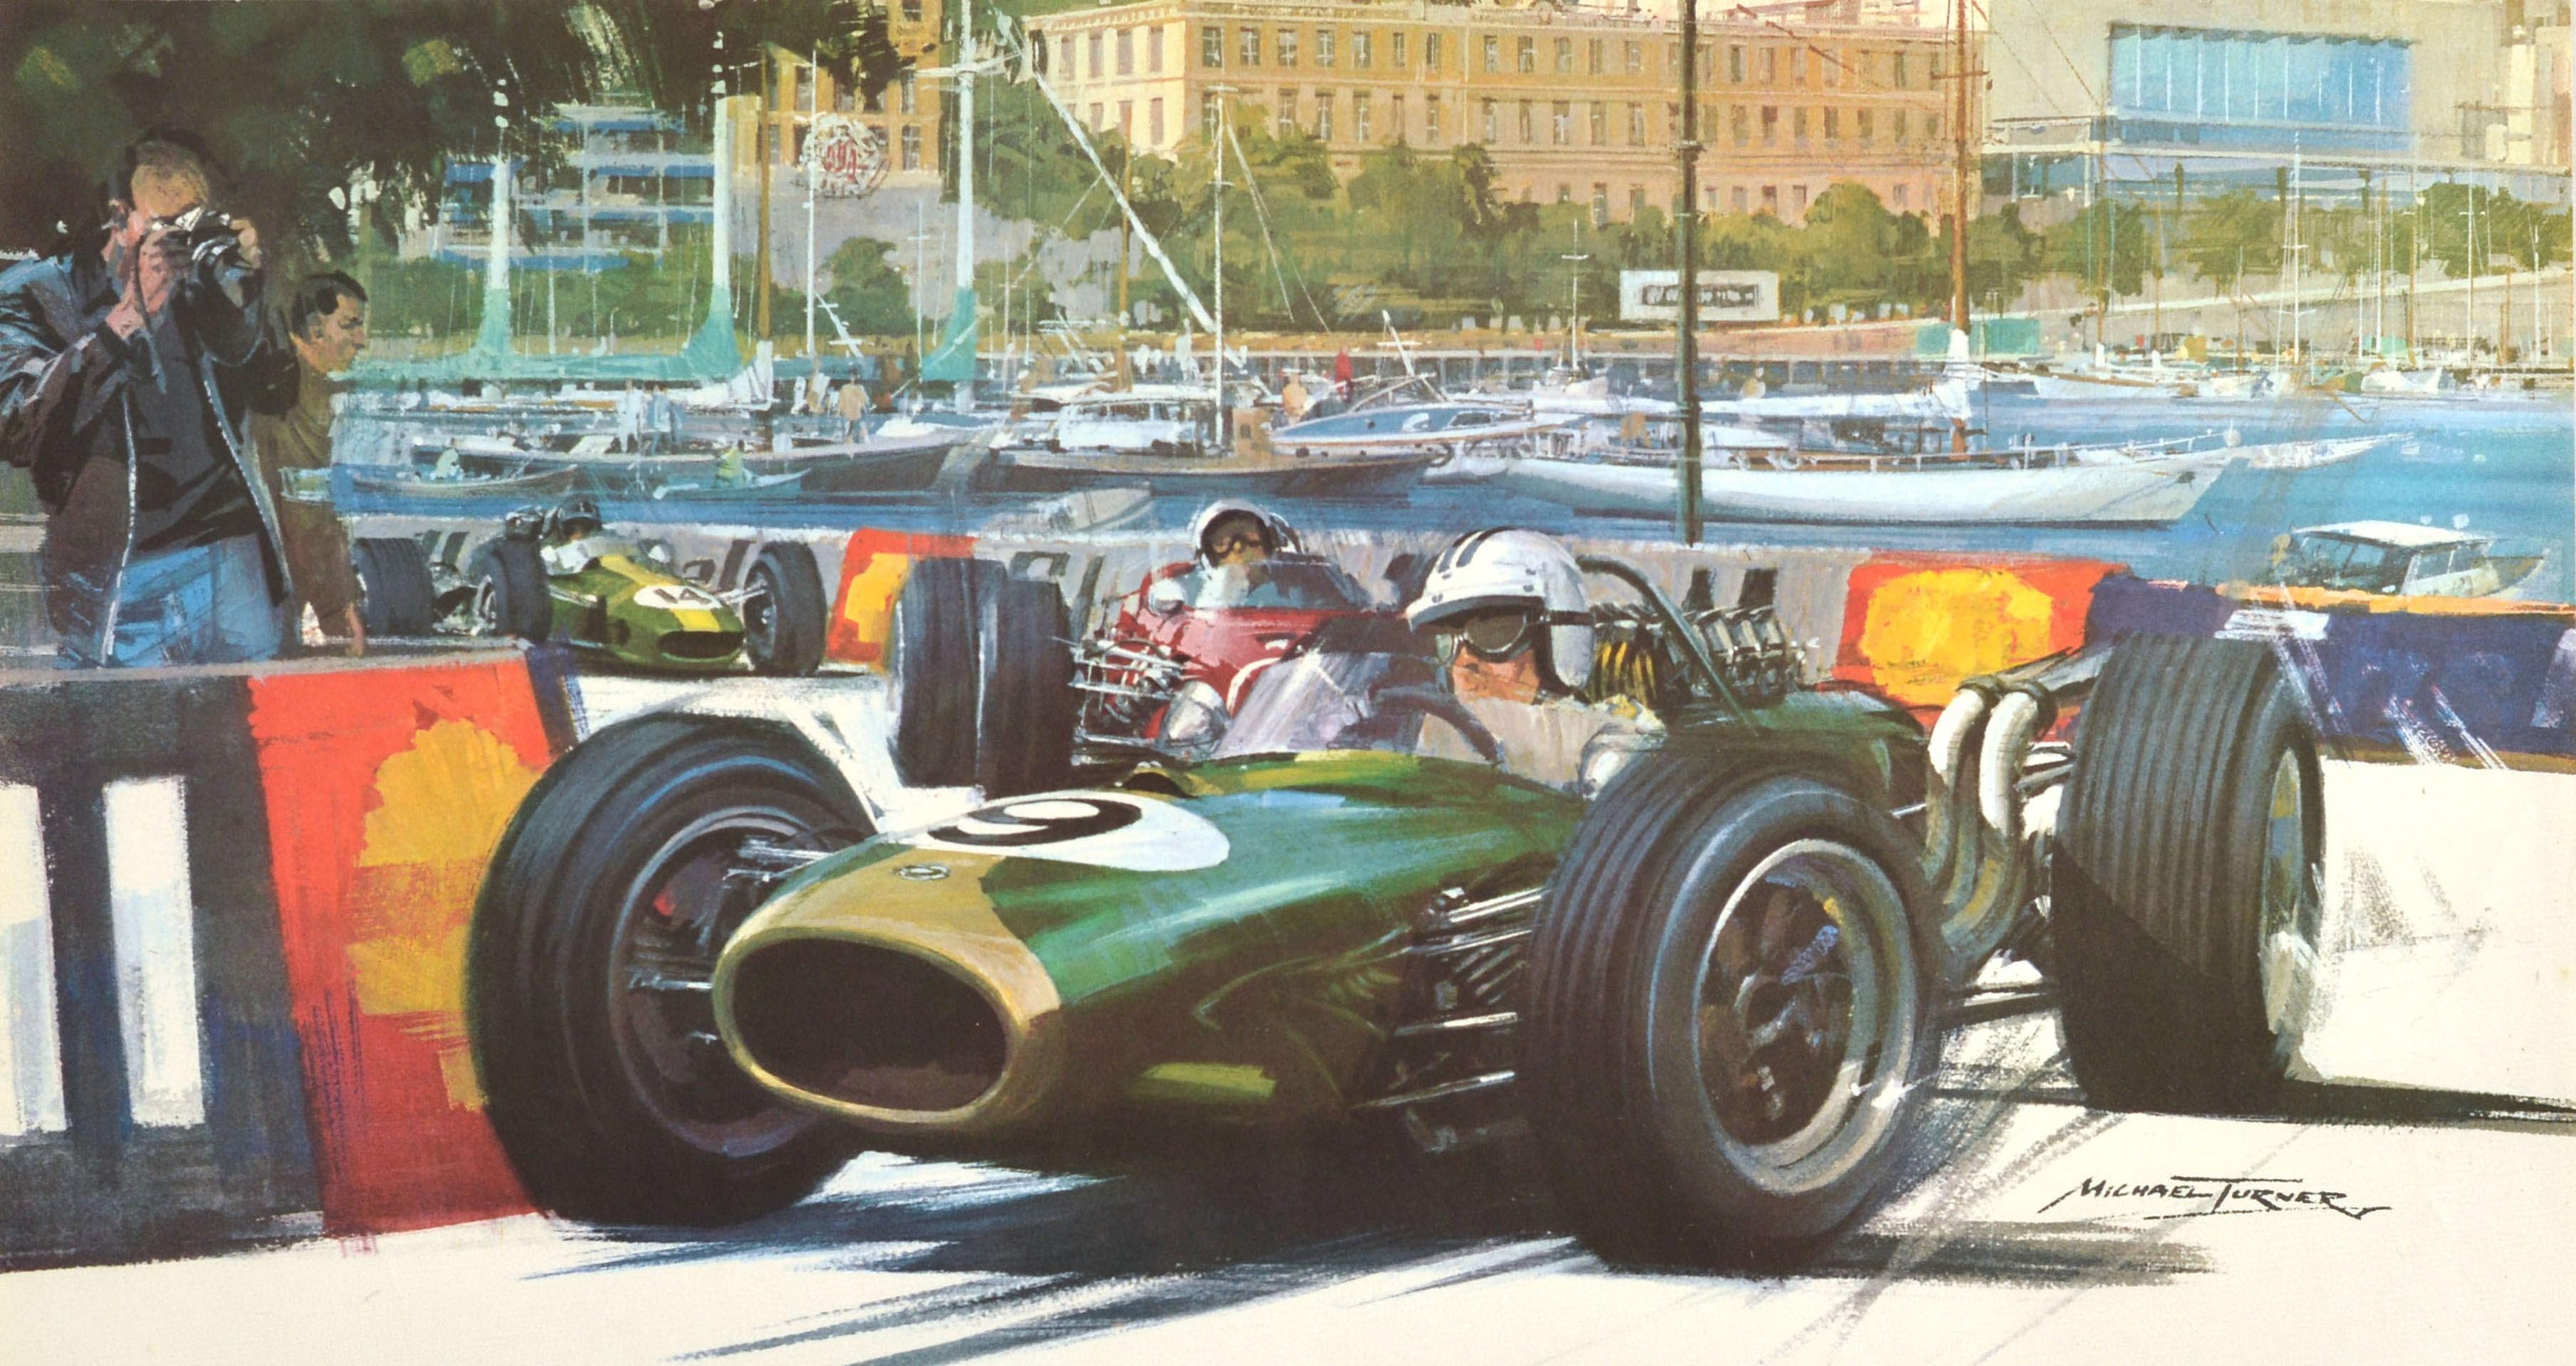 Affiche originale de sport automobile F1 pour le Grand Prix de Monaco 1968, les 25 et 26 mai. Le dessin dynamique représente une voiture de course verte portant le numéro 9 en tête de la course GP, passant à toute vitesse devant des panneaux